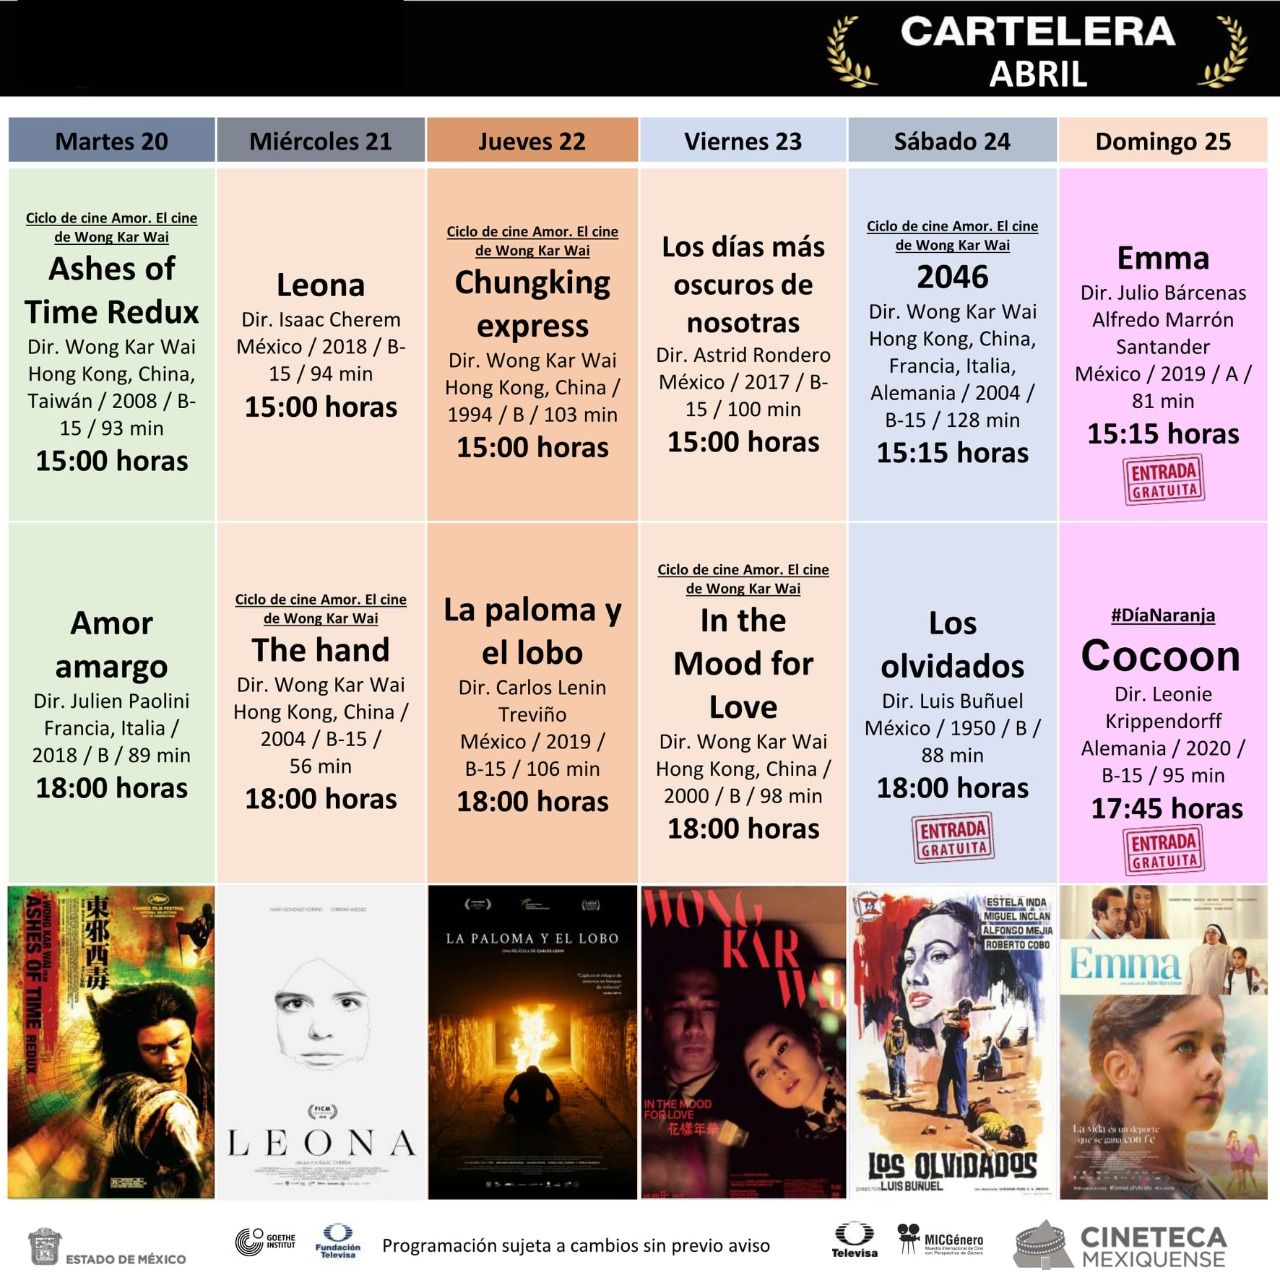 Invita Secretaria de Cultura y Turismo a disfrutar del Séptimo Arte en la Cineteca  Mexiquense